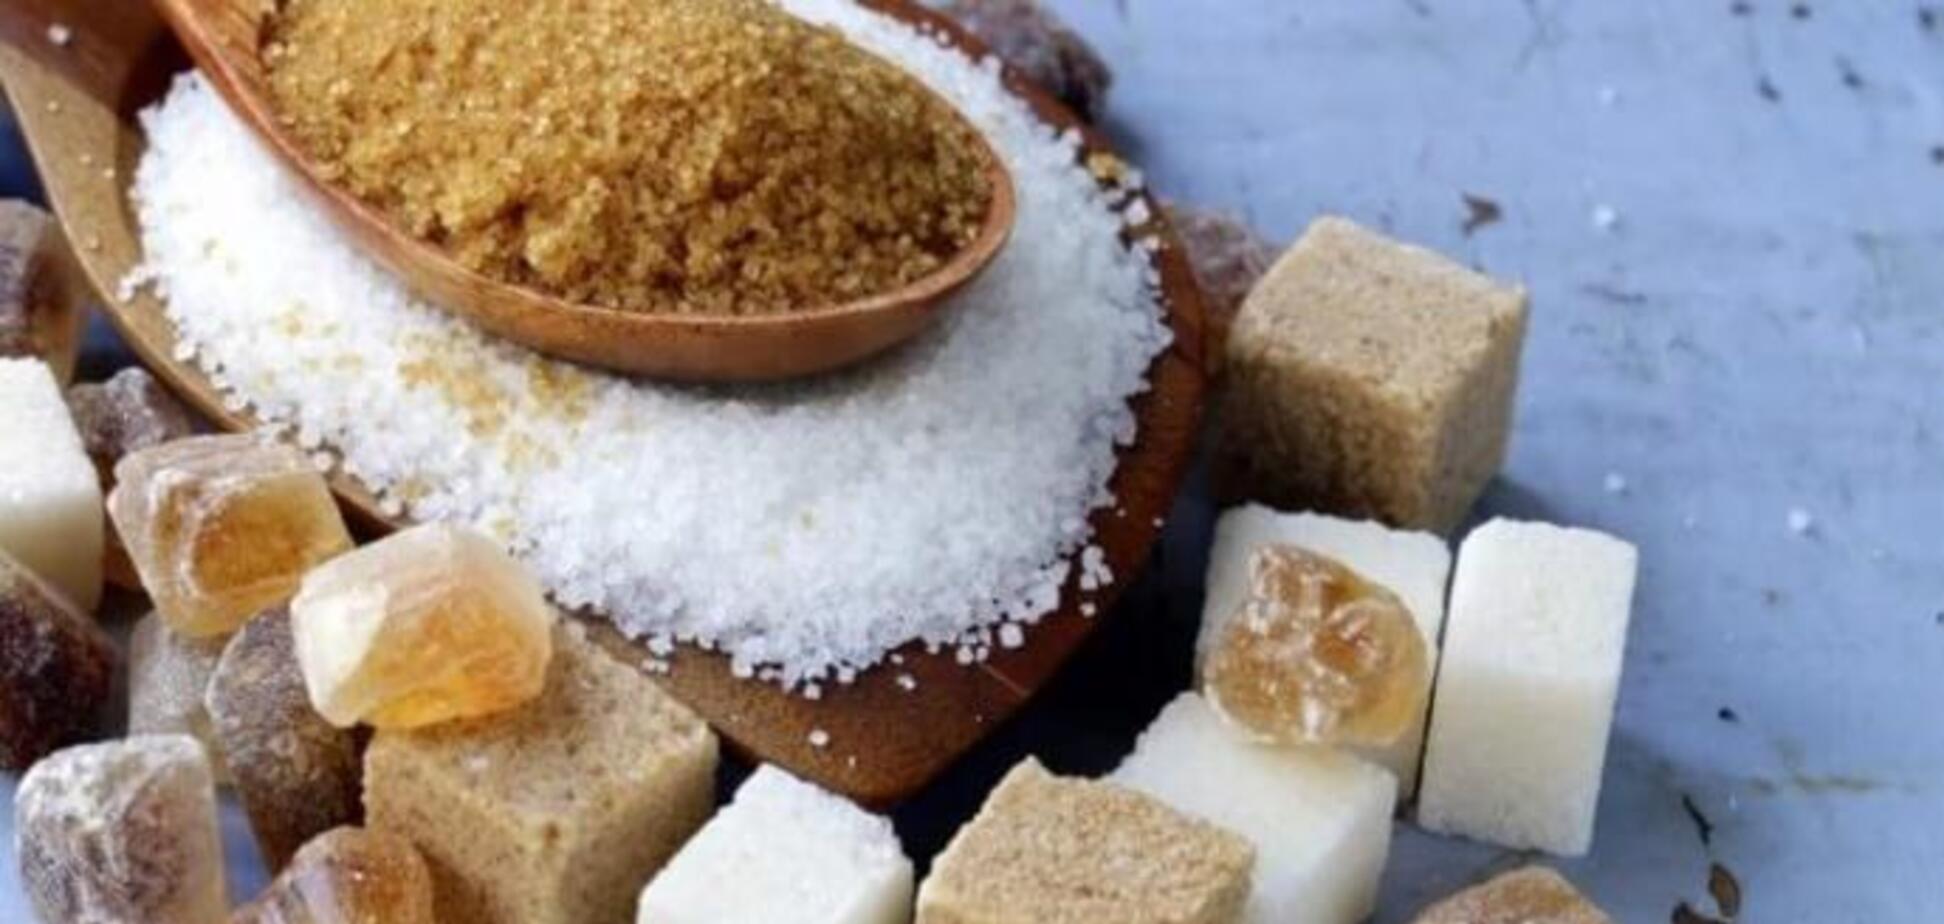 Как освободиться от сахарной зависимости? 5 шагов избавления